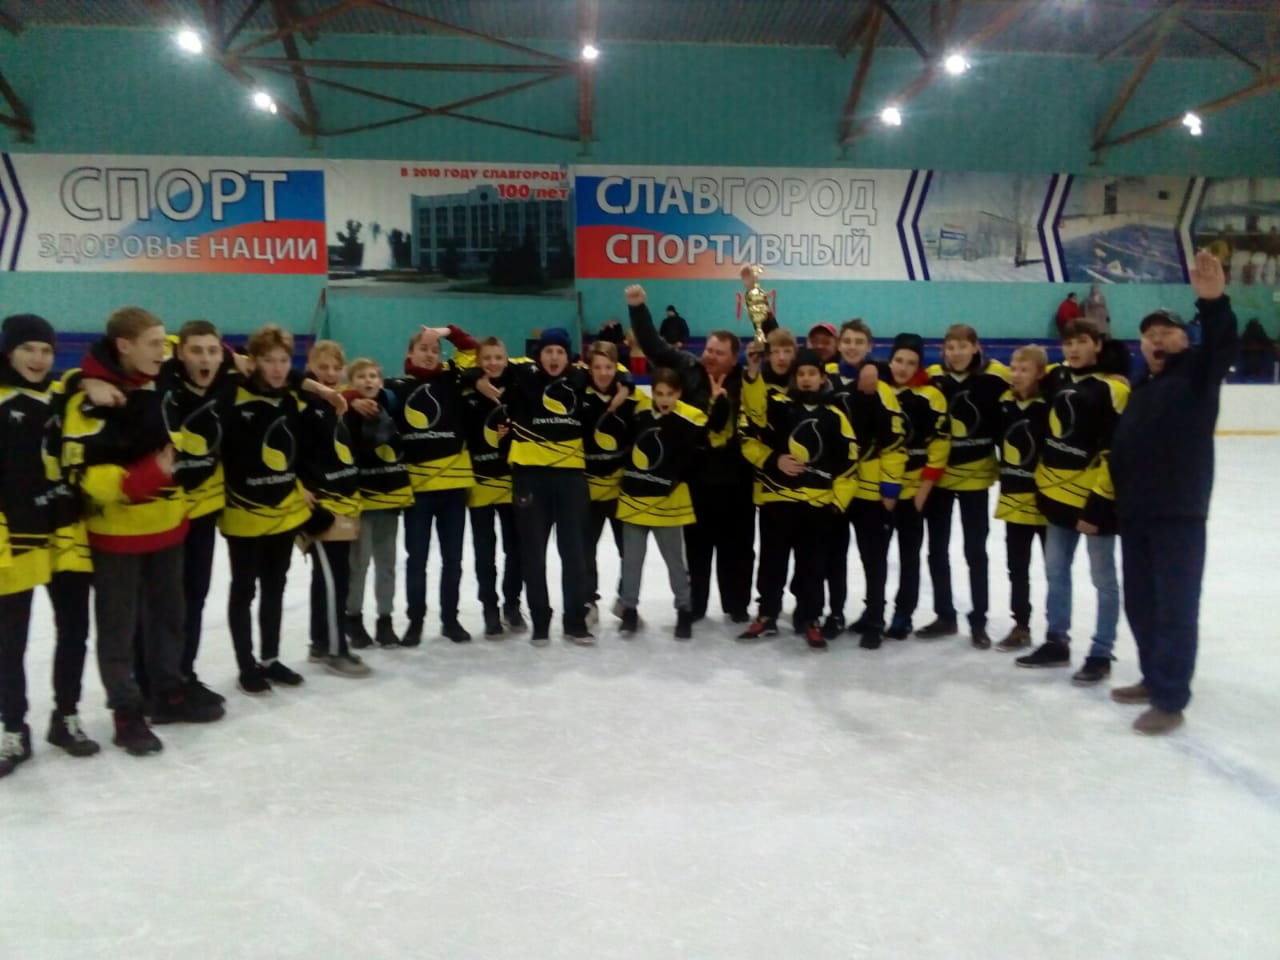 Детская хоккейная команда «НефтеХимСервис» одержала уверенную победу на открытом первенстве Новосибирской области, который проходил в г. Славгороде Алтайского края.